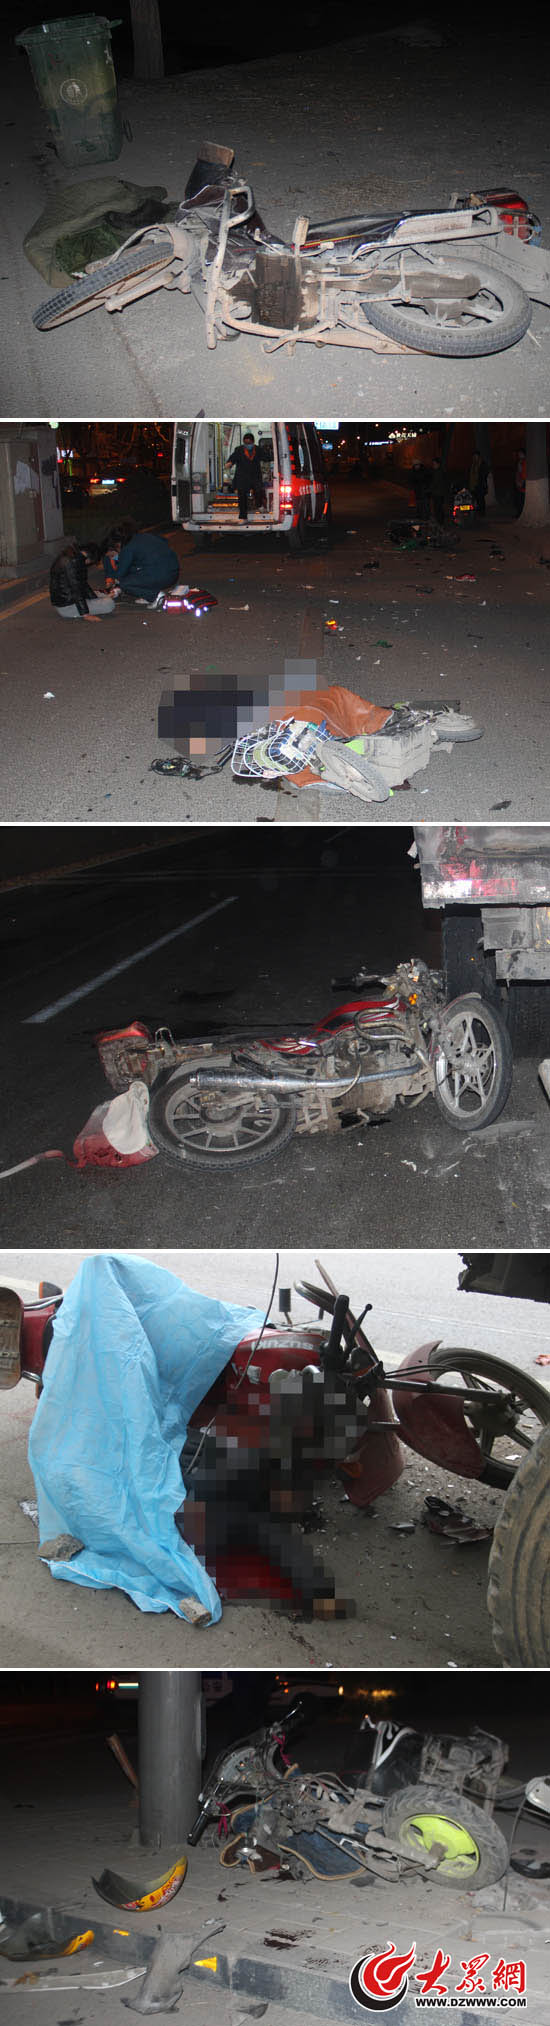 图为济南天桥区内因骑摩托不带安全头盔导致的部分死亡事故